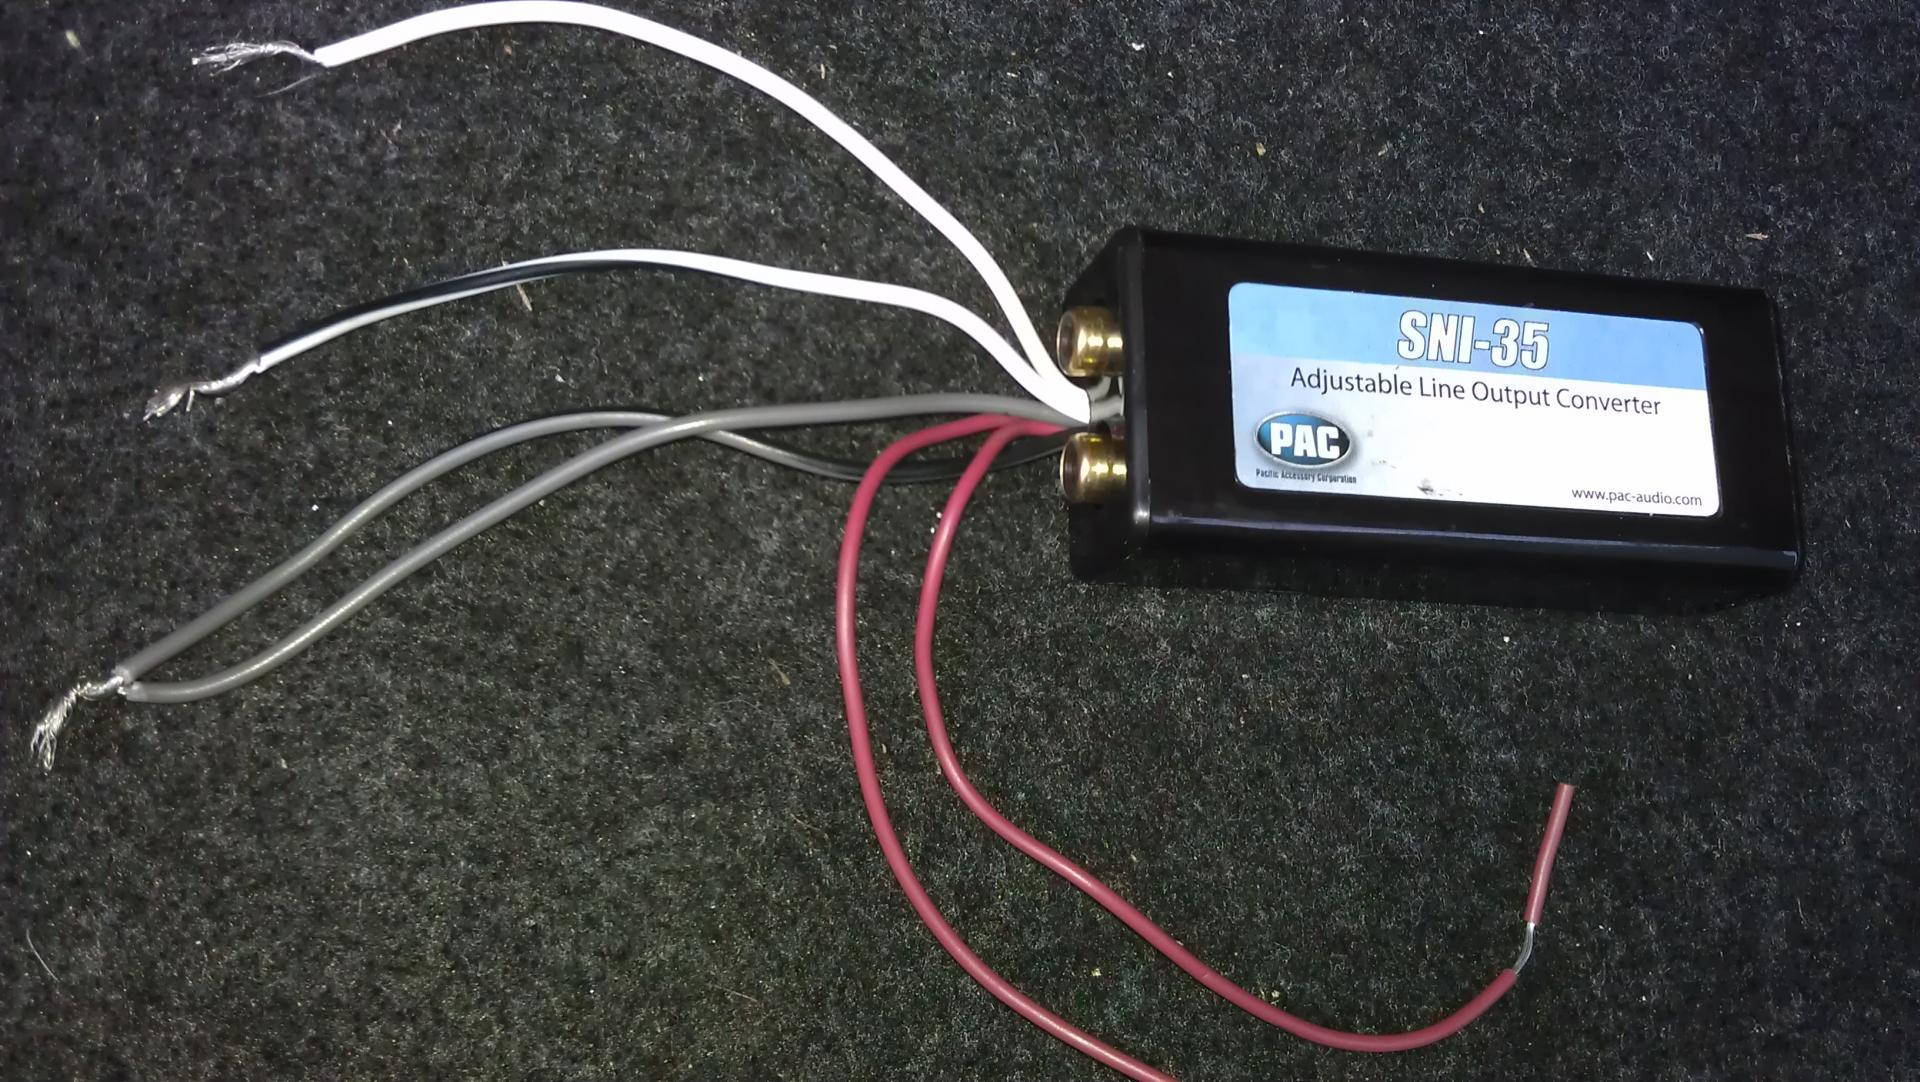 Sni 35 Adjustable Line Output Converter Wiring Diagram | Wiring Diagram - Pac Sni 35 Wiring Diagram